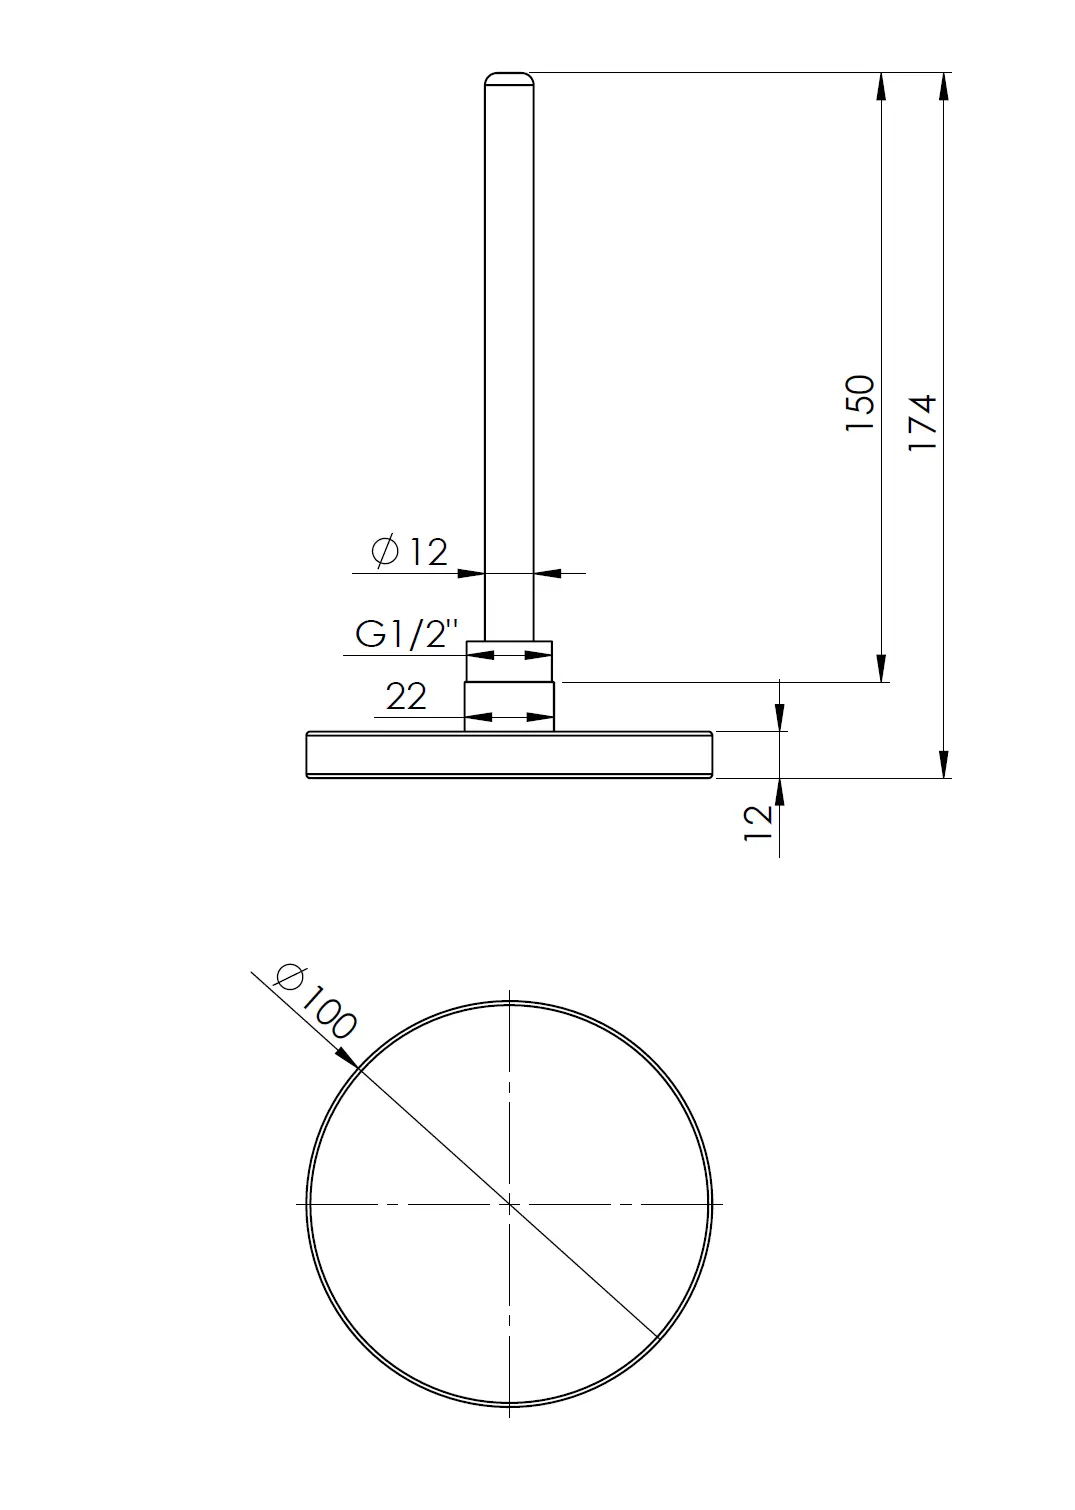 Termometr bimetaliczny BiTh 100, fi100 mm, 0÷120°C, L 150 mm, G1/2" ax, kl. 2 - budowa